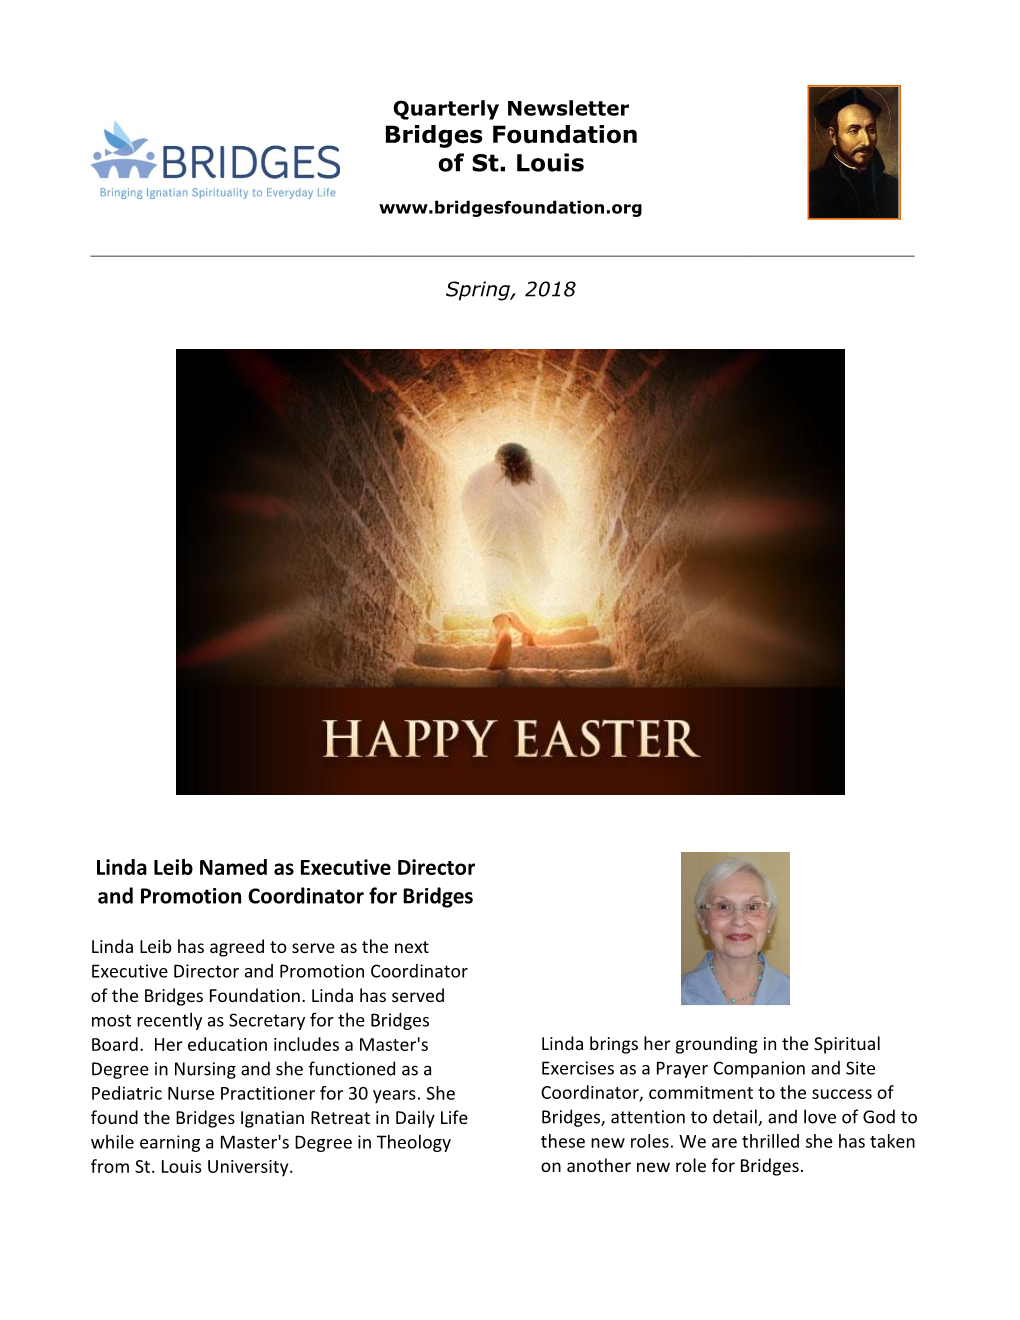 Bridges Newsletter Spring 2018